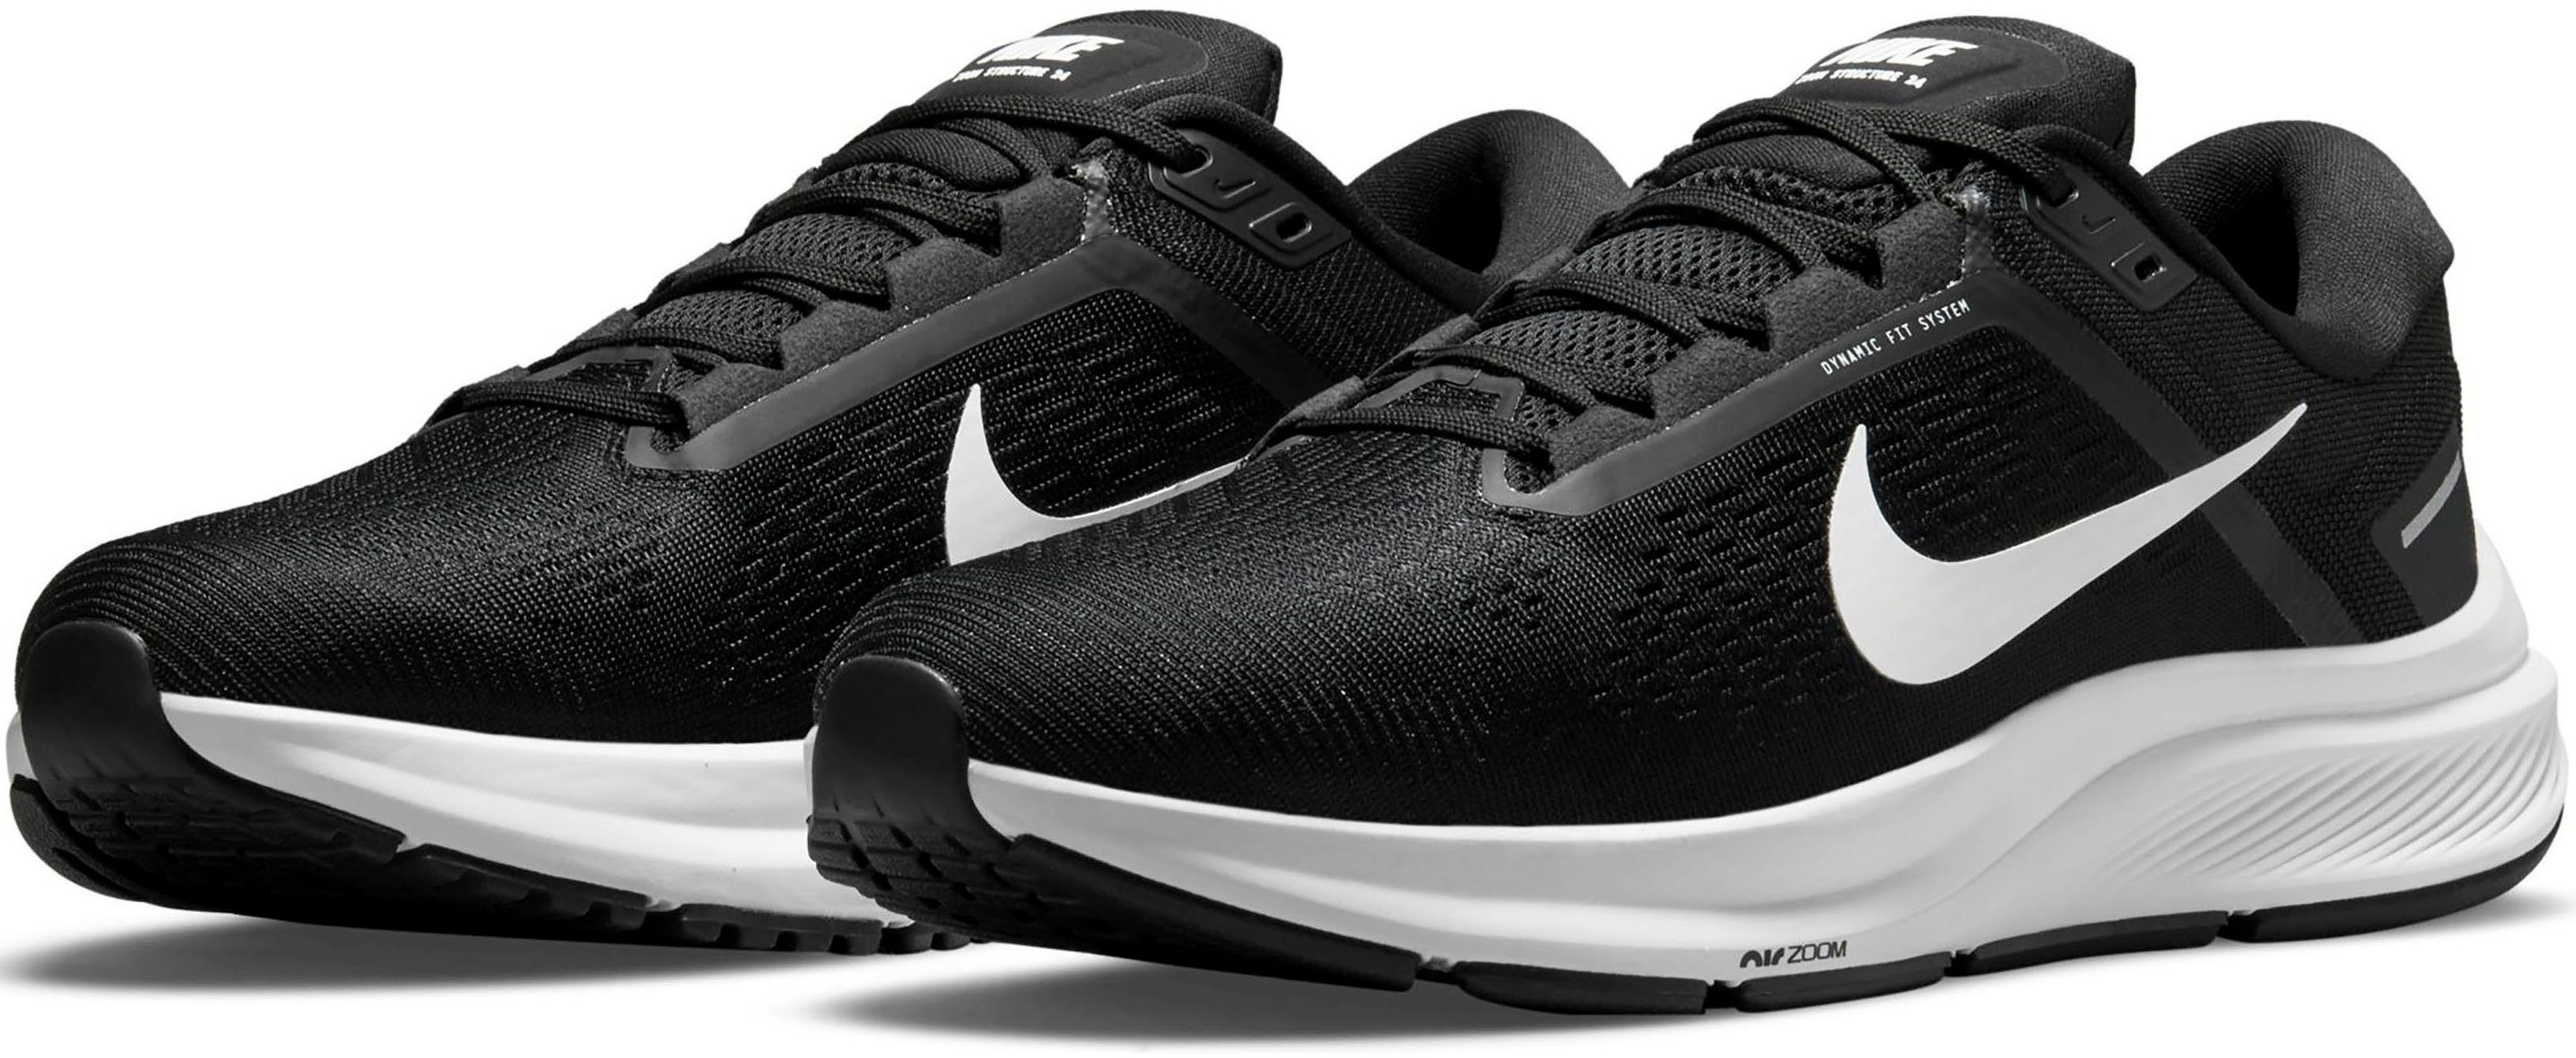 Nike »AIR ZOOM STRUCTURE 24« Laufschuh online kaufen | OTTO